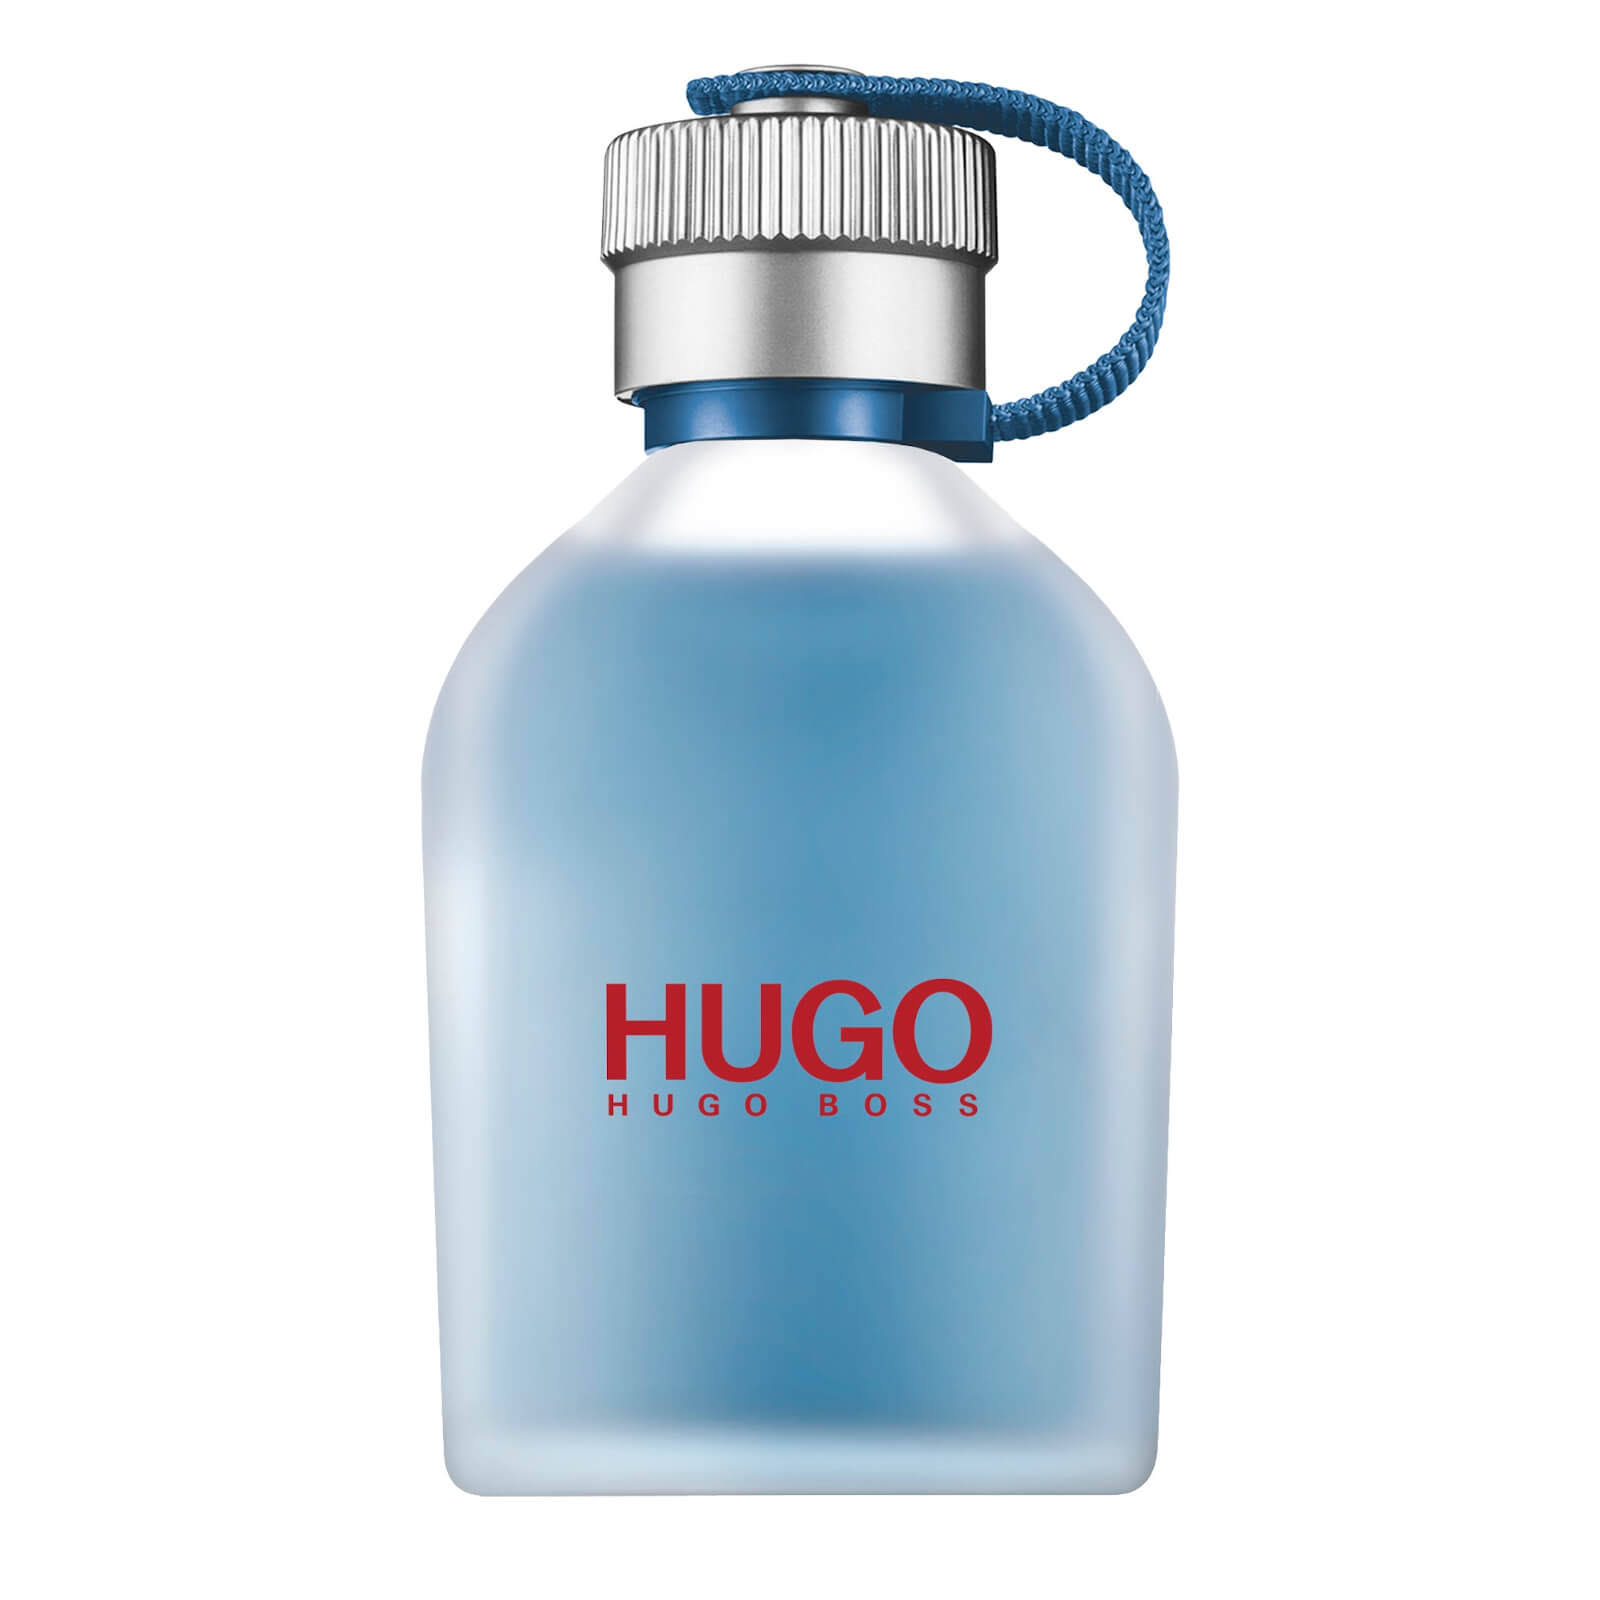 Hugo Boss - Hugo Now 75ml